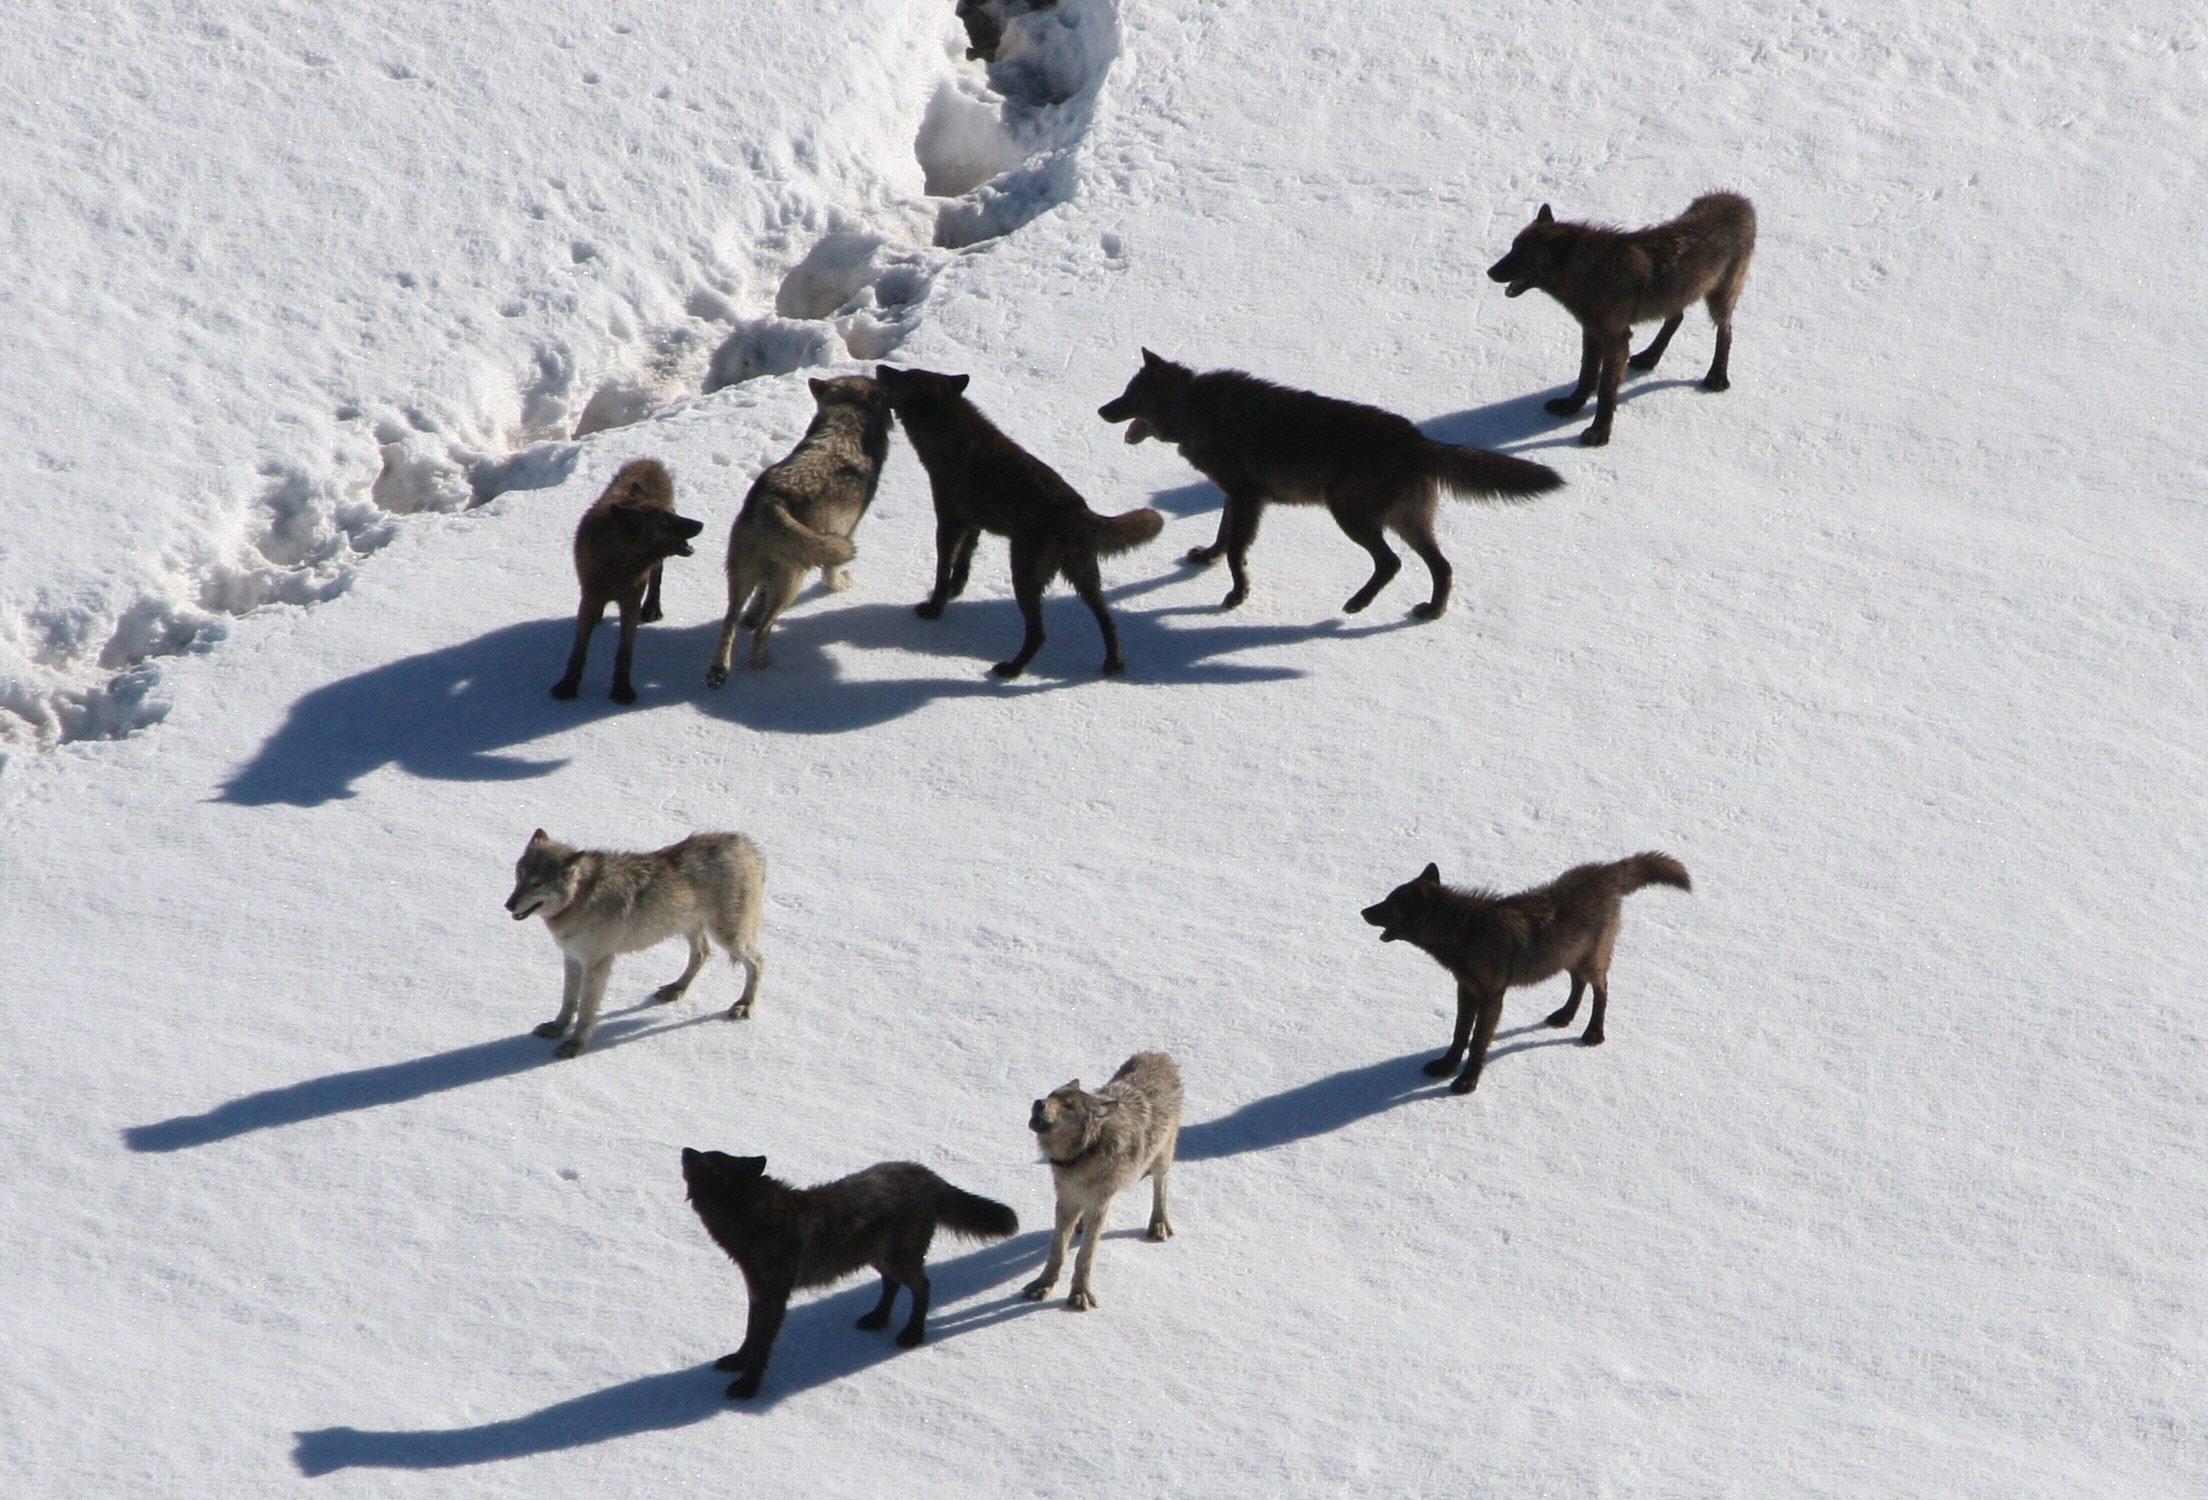 Sind die europäischen Wölfe größtenteils Hybriden? Das Thema Wolfshybrid beschäftigt nicht nur das Senckenberg-Institut, wie Dr. Nina Krüger berichtet.